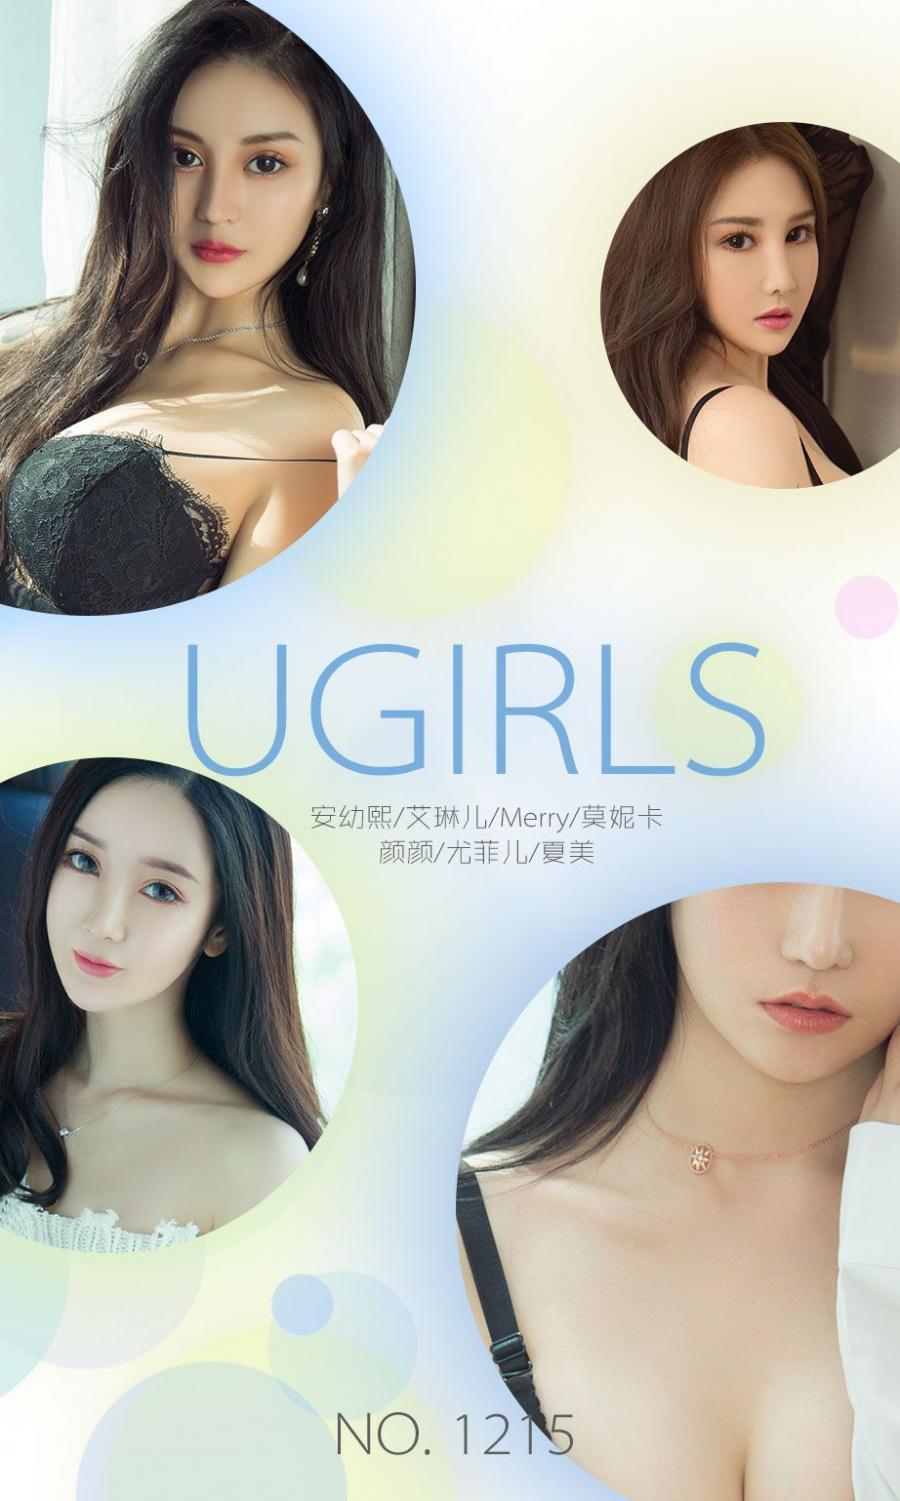 Ugirls App Vol. 009 Xia Mei